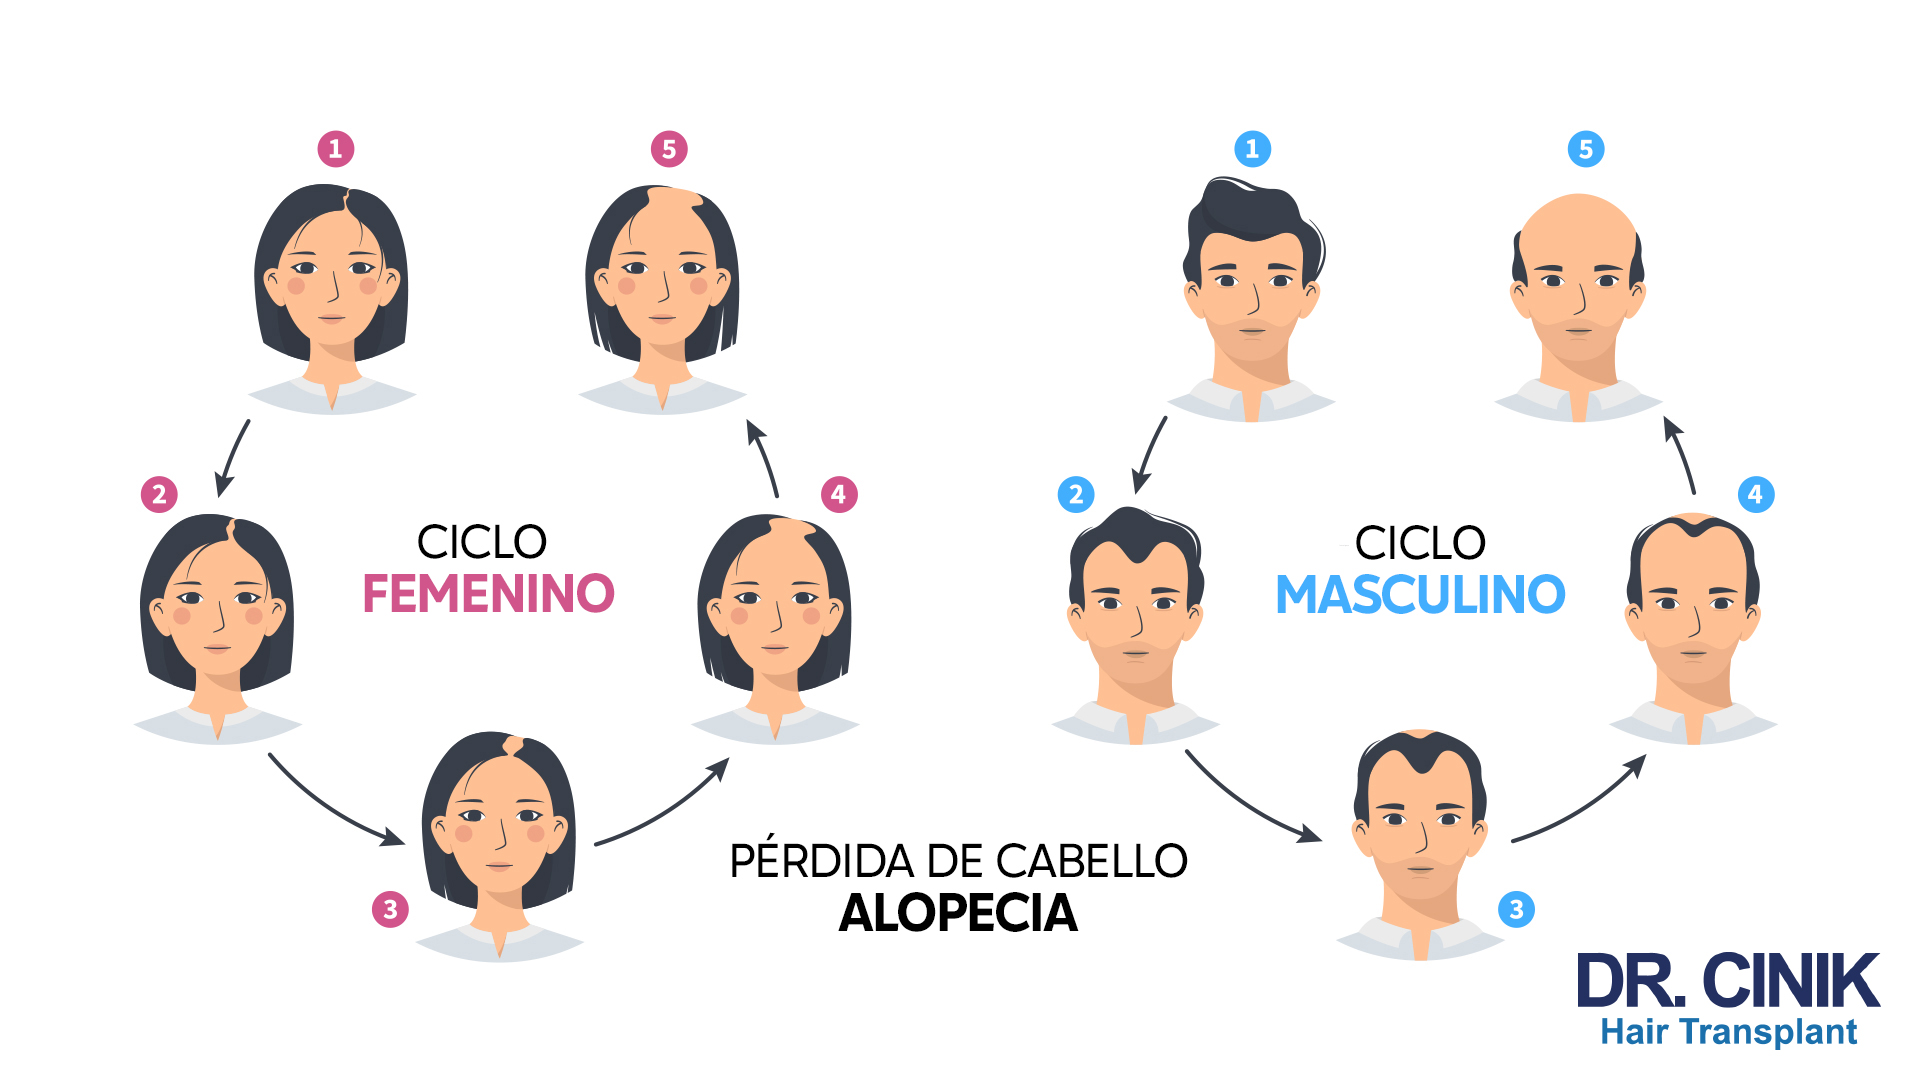 Ilustración que compara el "CICLO FEMENINO" y el "CICLO MASCULINO" de pérdida de cabello. En el lado izquierdo, tres retratos de una mujer en diferentes etapas de pérdida de cabello con flechas que indican la progresión desde el cabello completo, adelgazamiento y mayor pérdida, etiquetadas con números del 1 al 3. En el centro inferior, el texto "PÉRDIDA DE CABELLO ALOPECIA". En el lado derecho, similar al femenino, tres retratos de un hombre que muestran etapas desde cabello completo, adelgazamiento hasta calvicie avanzada, etiquetados con números del 1 al 3. Ambos ciclos tienen dos retratos adicionales, etiquetados como 4 y 5, que representan etapas posteriores en el ciclo. En la esquina inferior derecha, el logo "DR. CINIK Hair Transplant".